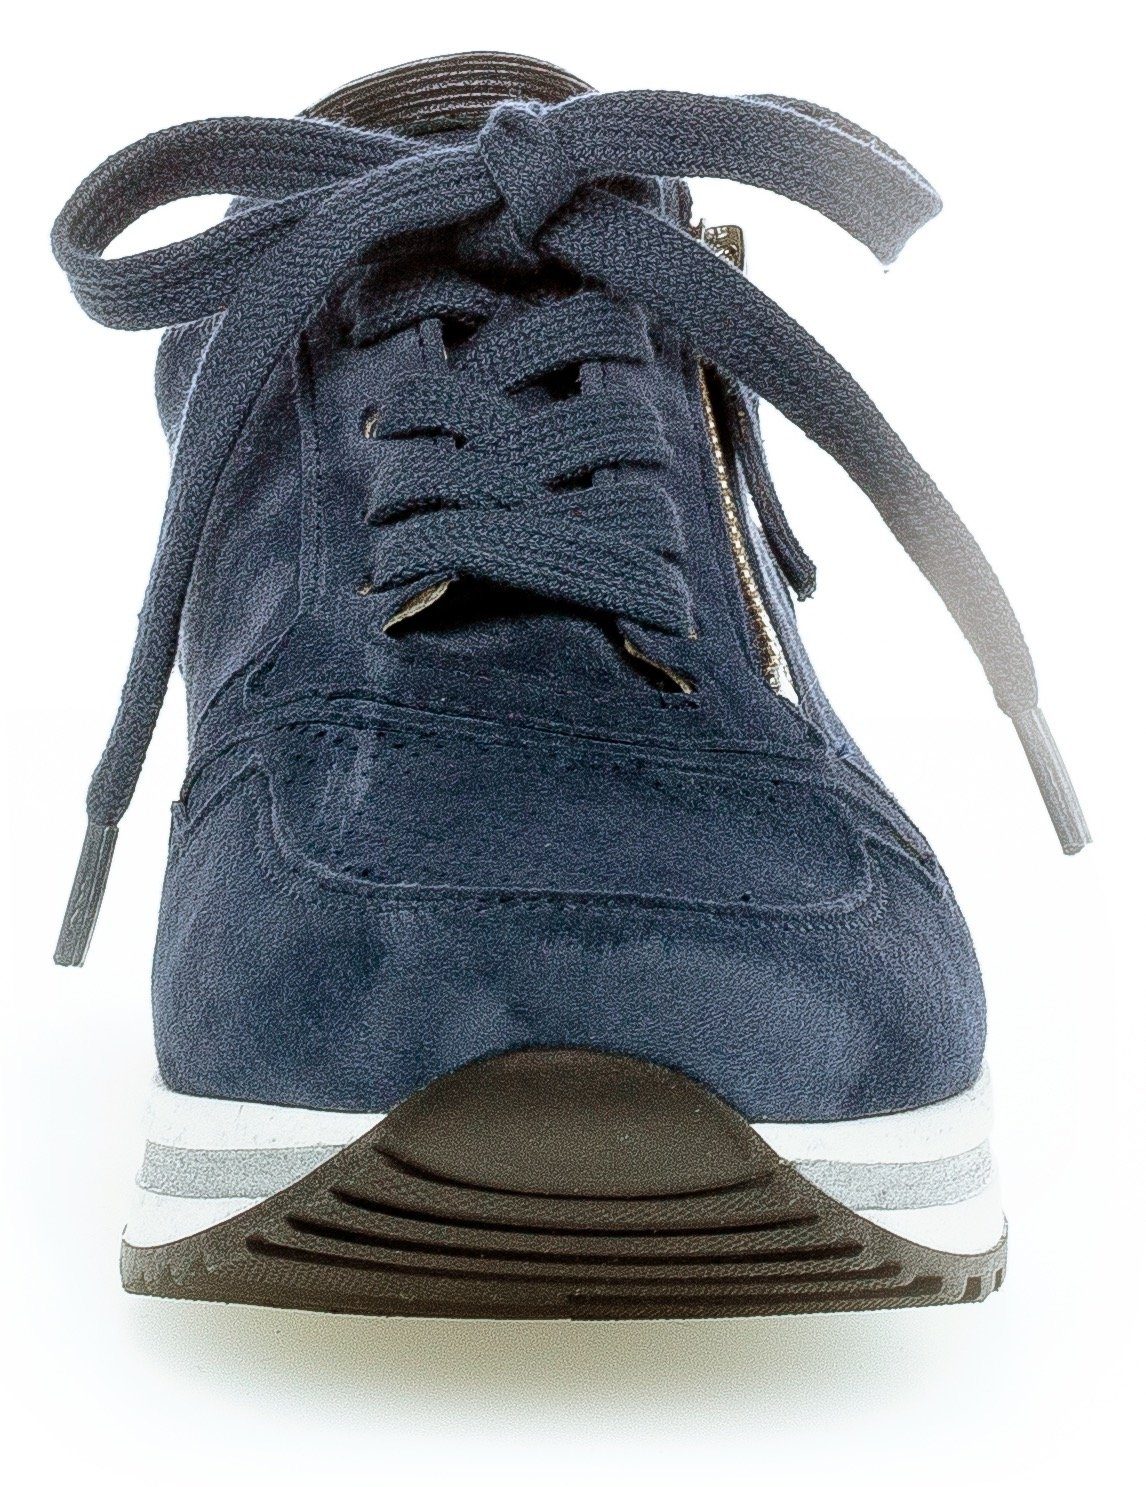 Gabor Perforierung TURIN Keilsneaker mit leichter blau